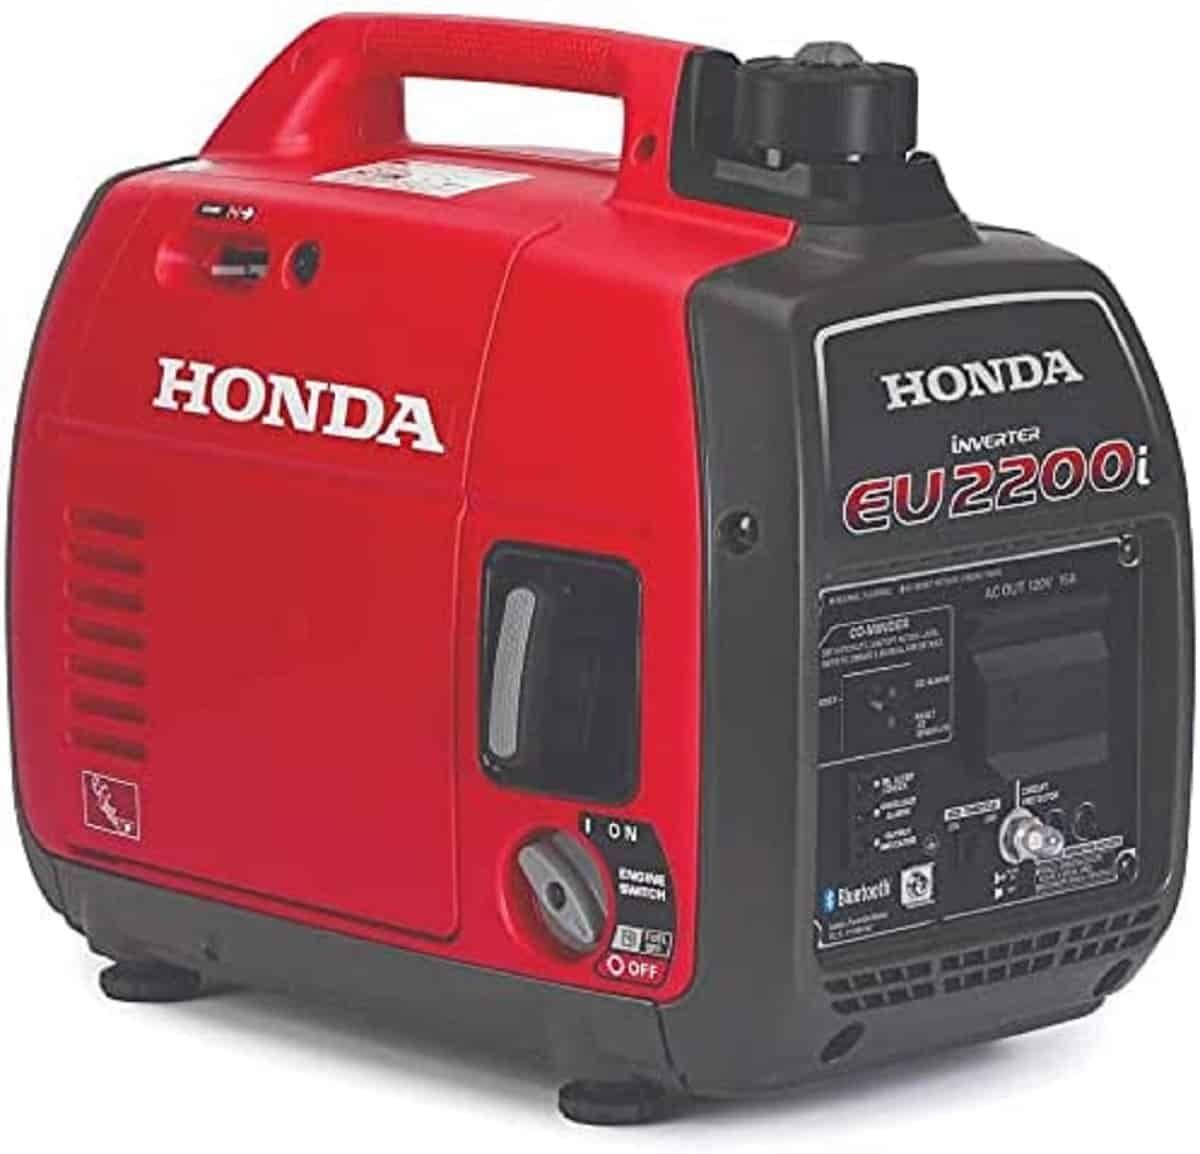 Honda EU2200i Gas Generator